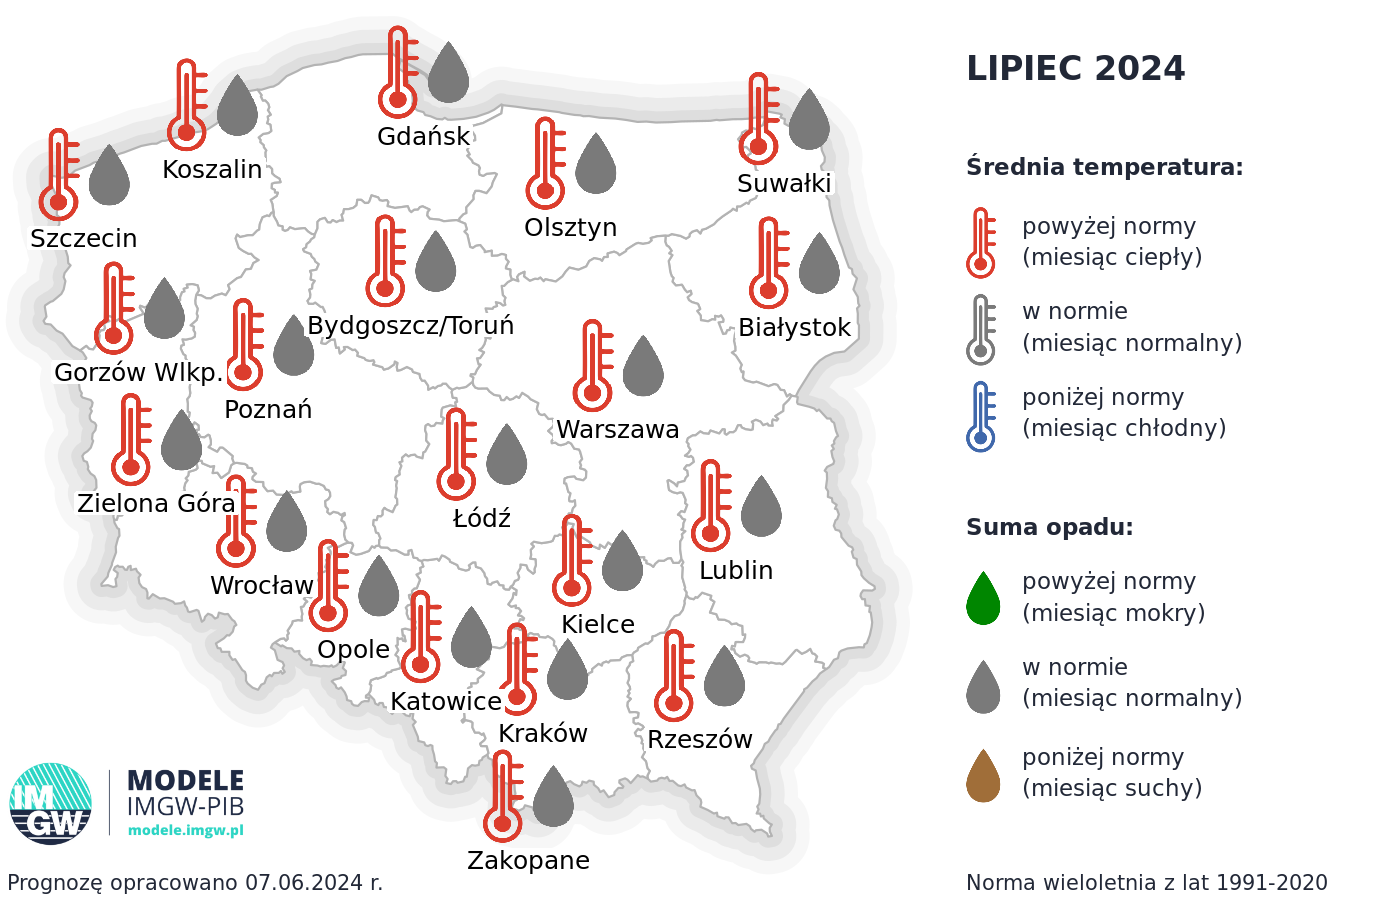 Rys. 1. Prognoza średniej miesięcznej temperatury powietrza i miesięcznej sumy opadów atmosferycznych na lipiec 2024 r. dla wybranych miast w Polsce